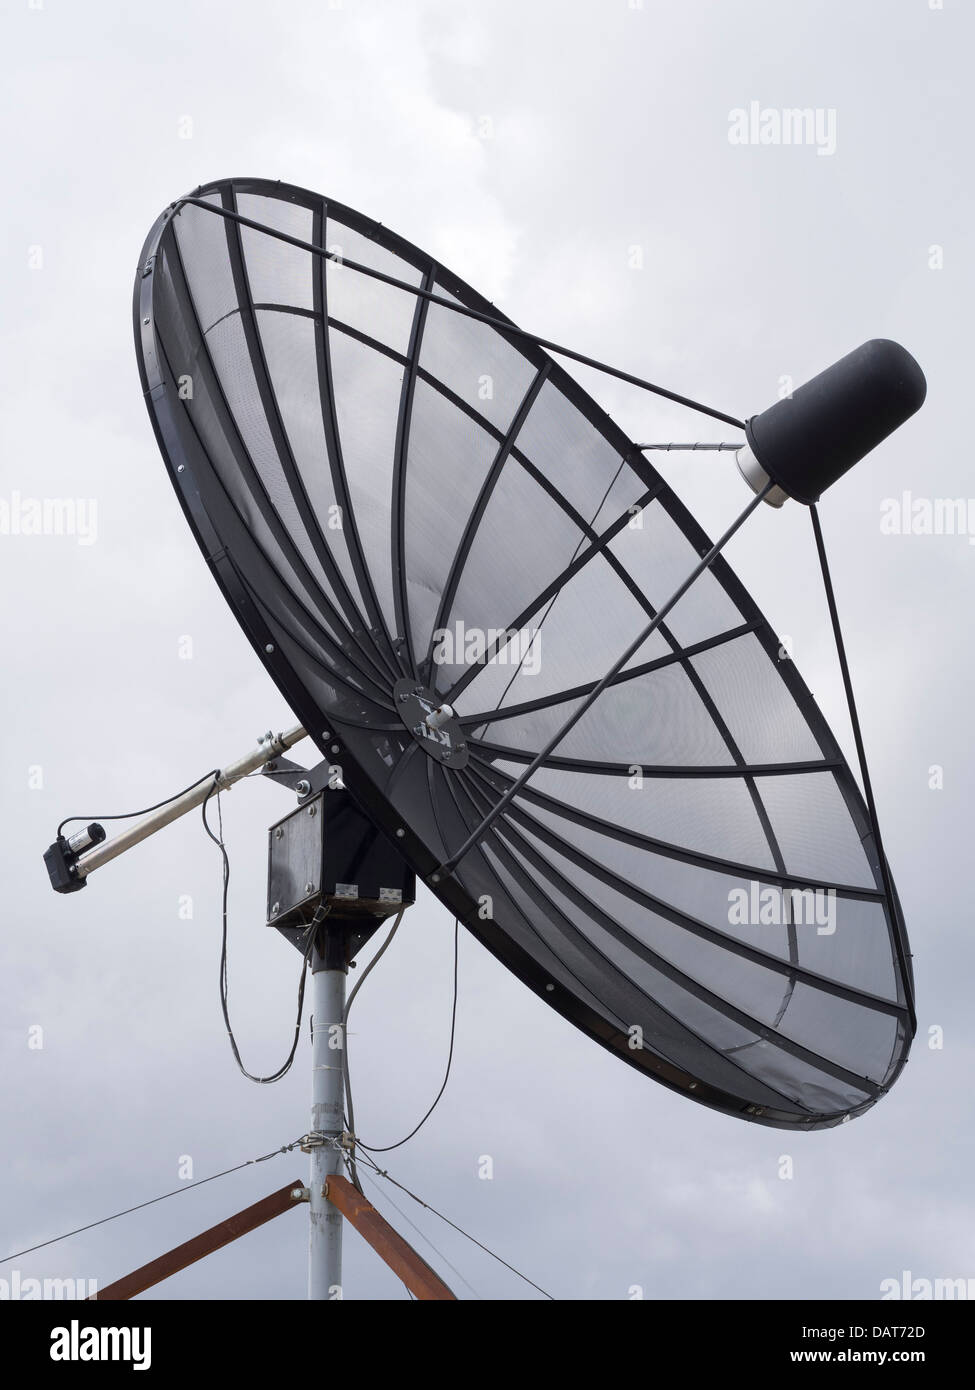 Antenne parabolique Banque D'Images